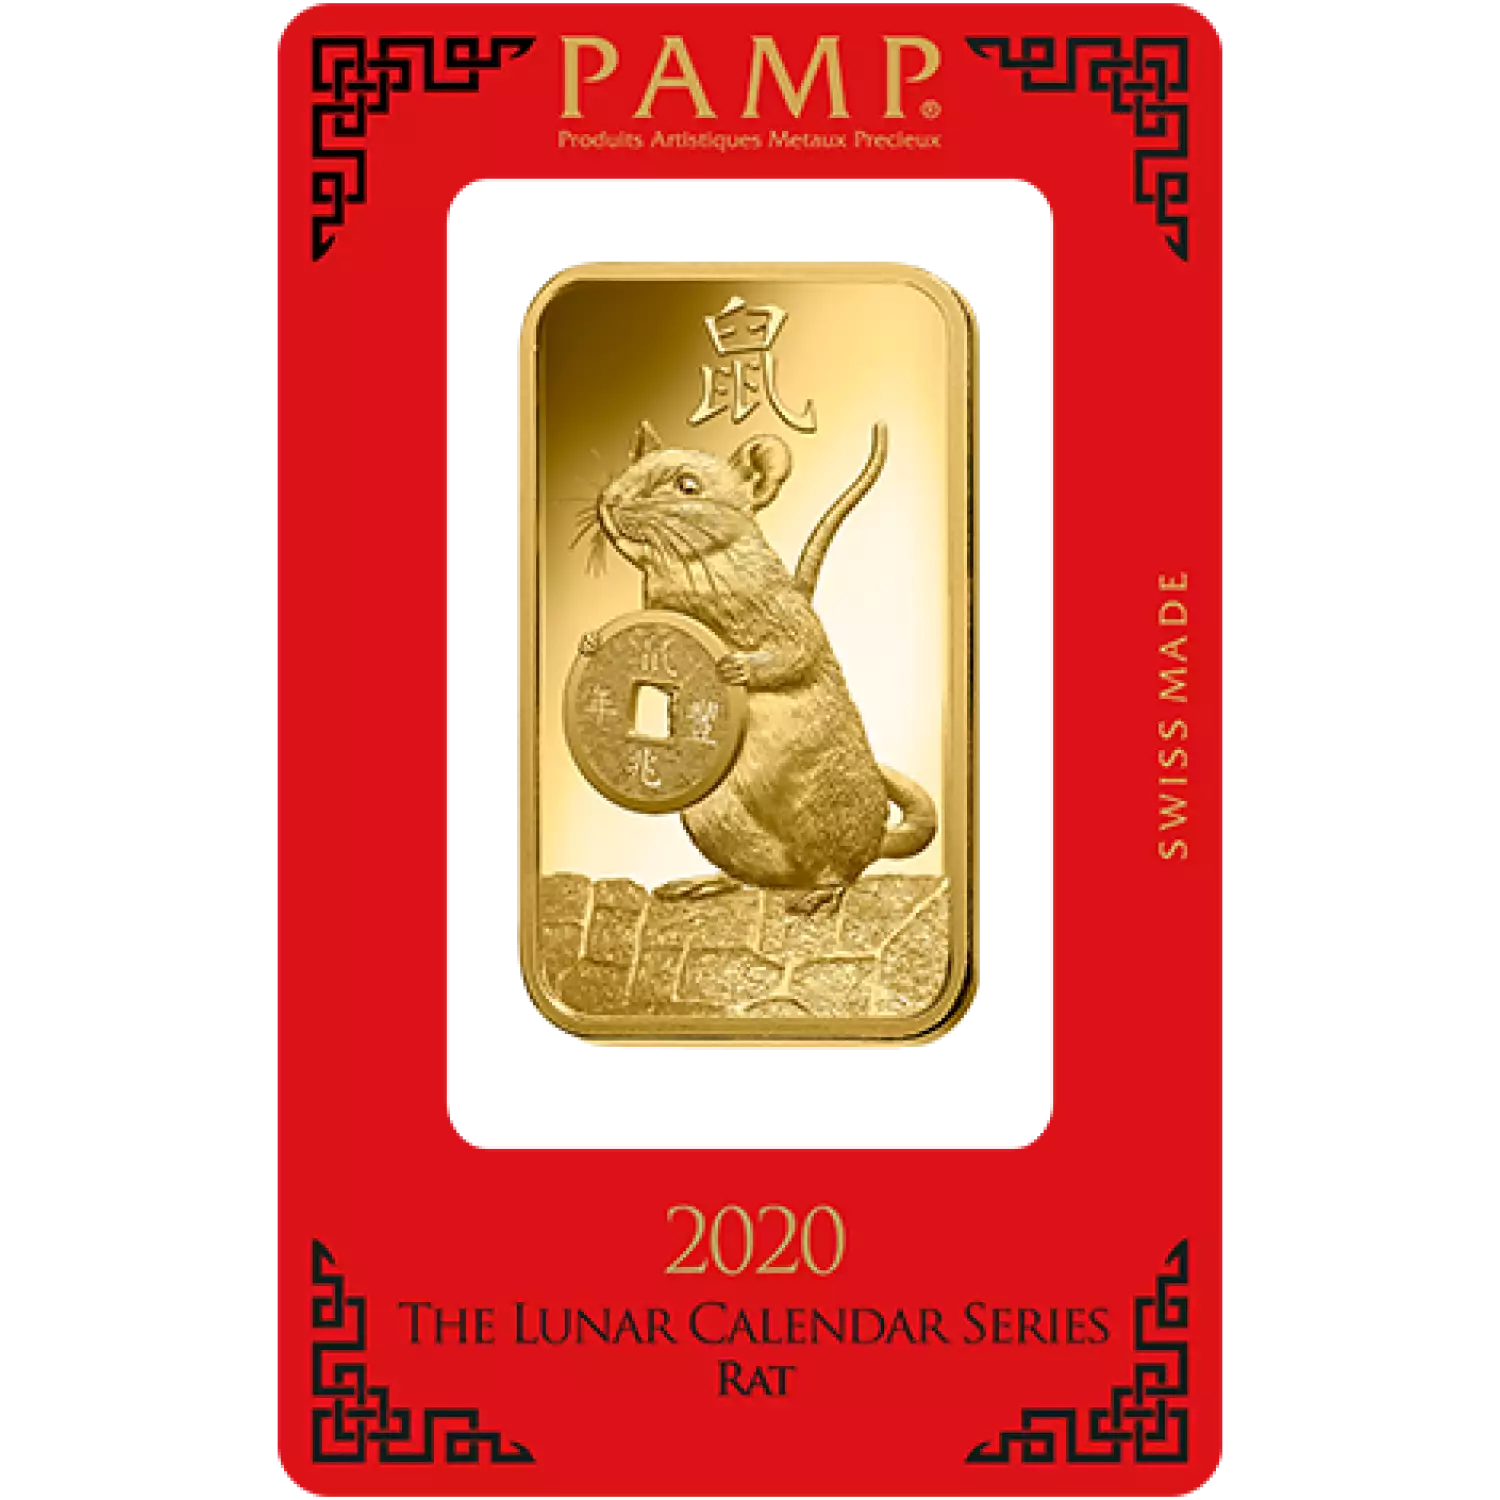 100g PAMP Gold Bar - Lunar Rat (2)